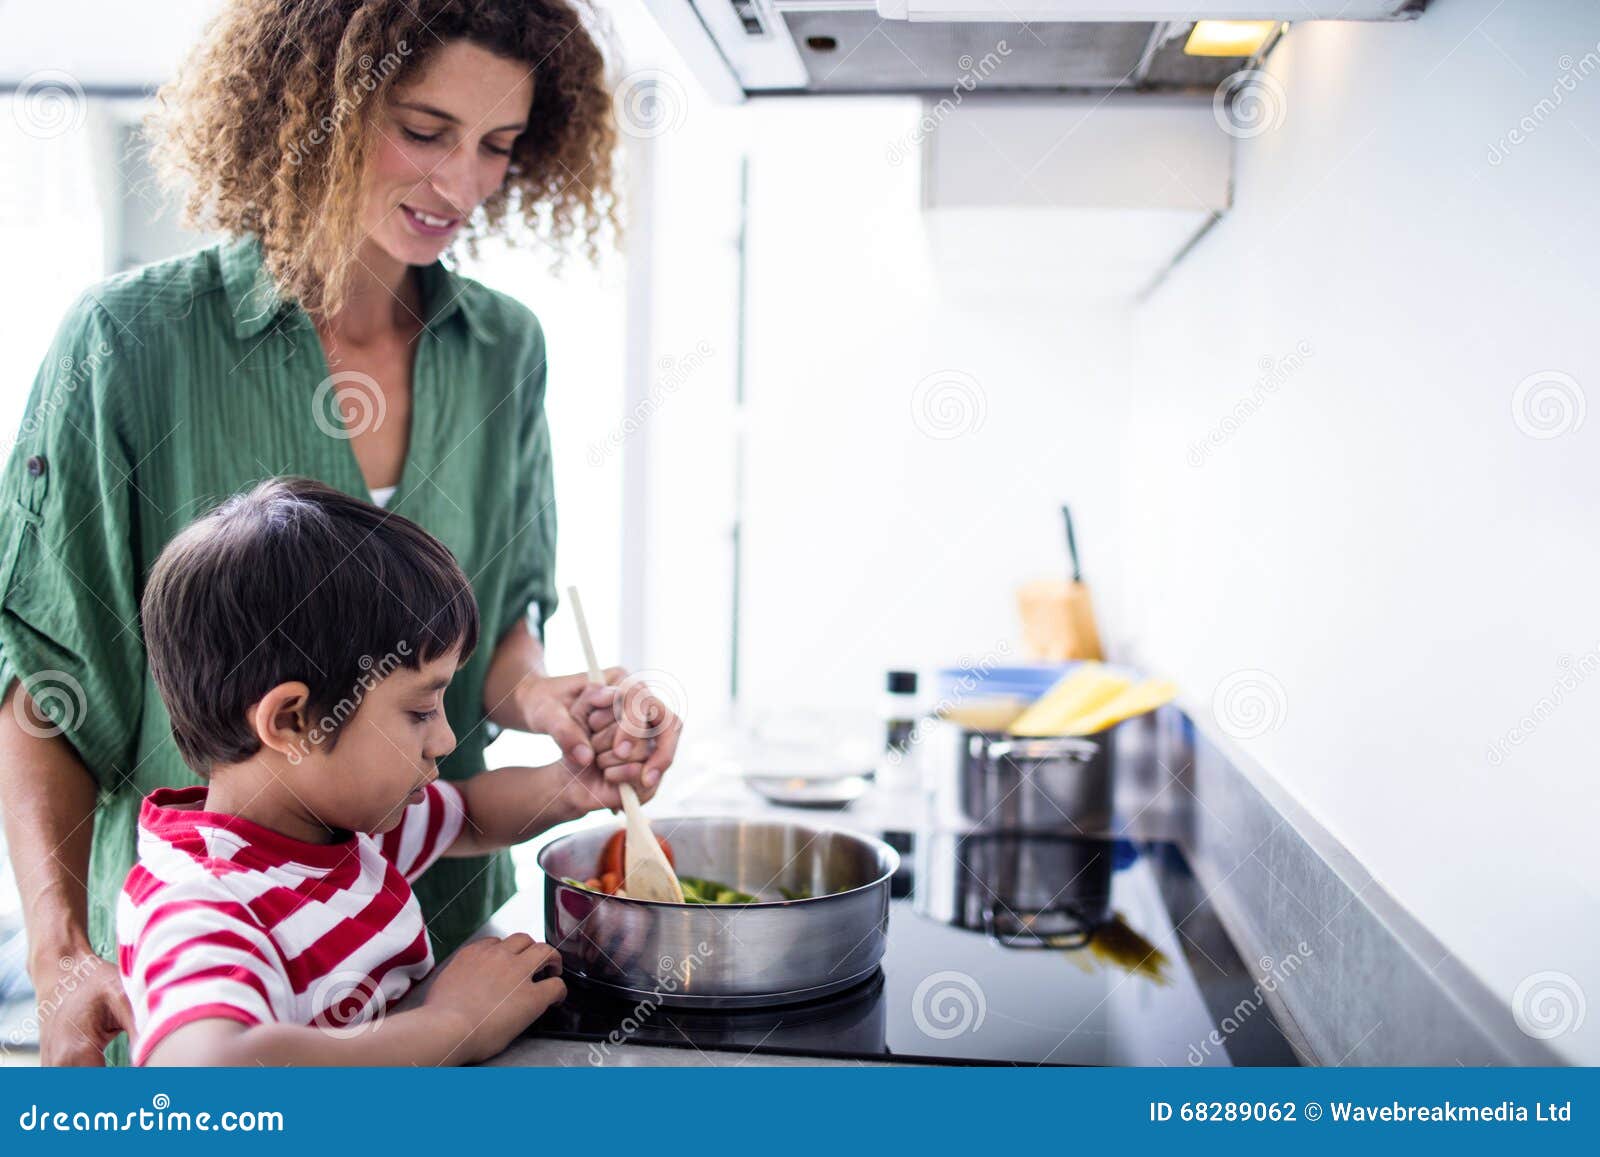 Приходит сын на кухню. Семья на кухне. Счастливая семья на кухне. Мама с ребенком на кухне. Мать и сын готовят.